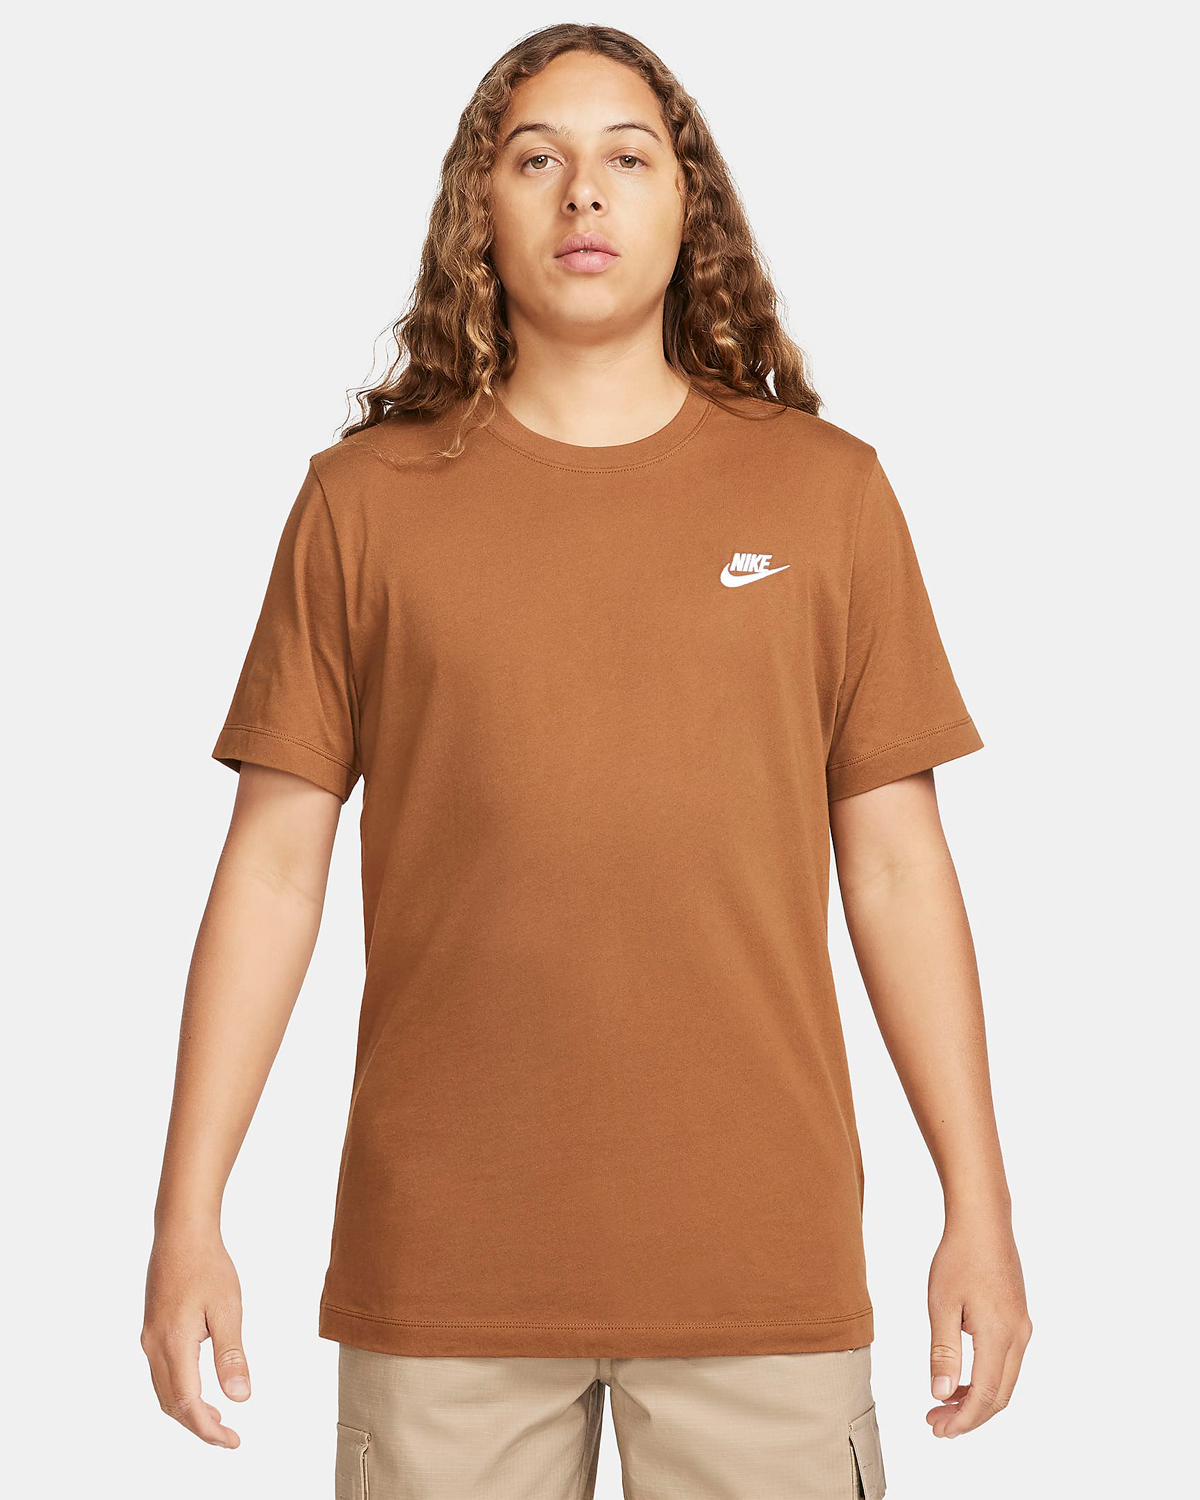 Nike-Sportswear-Club-T-Shirt-Light-British-Tan